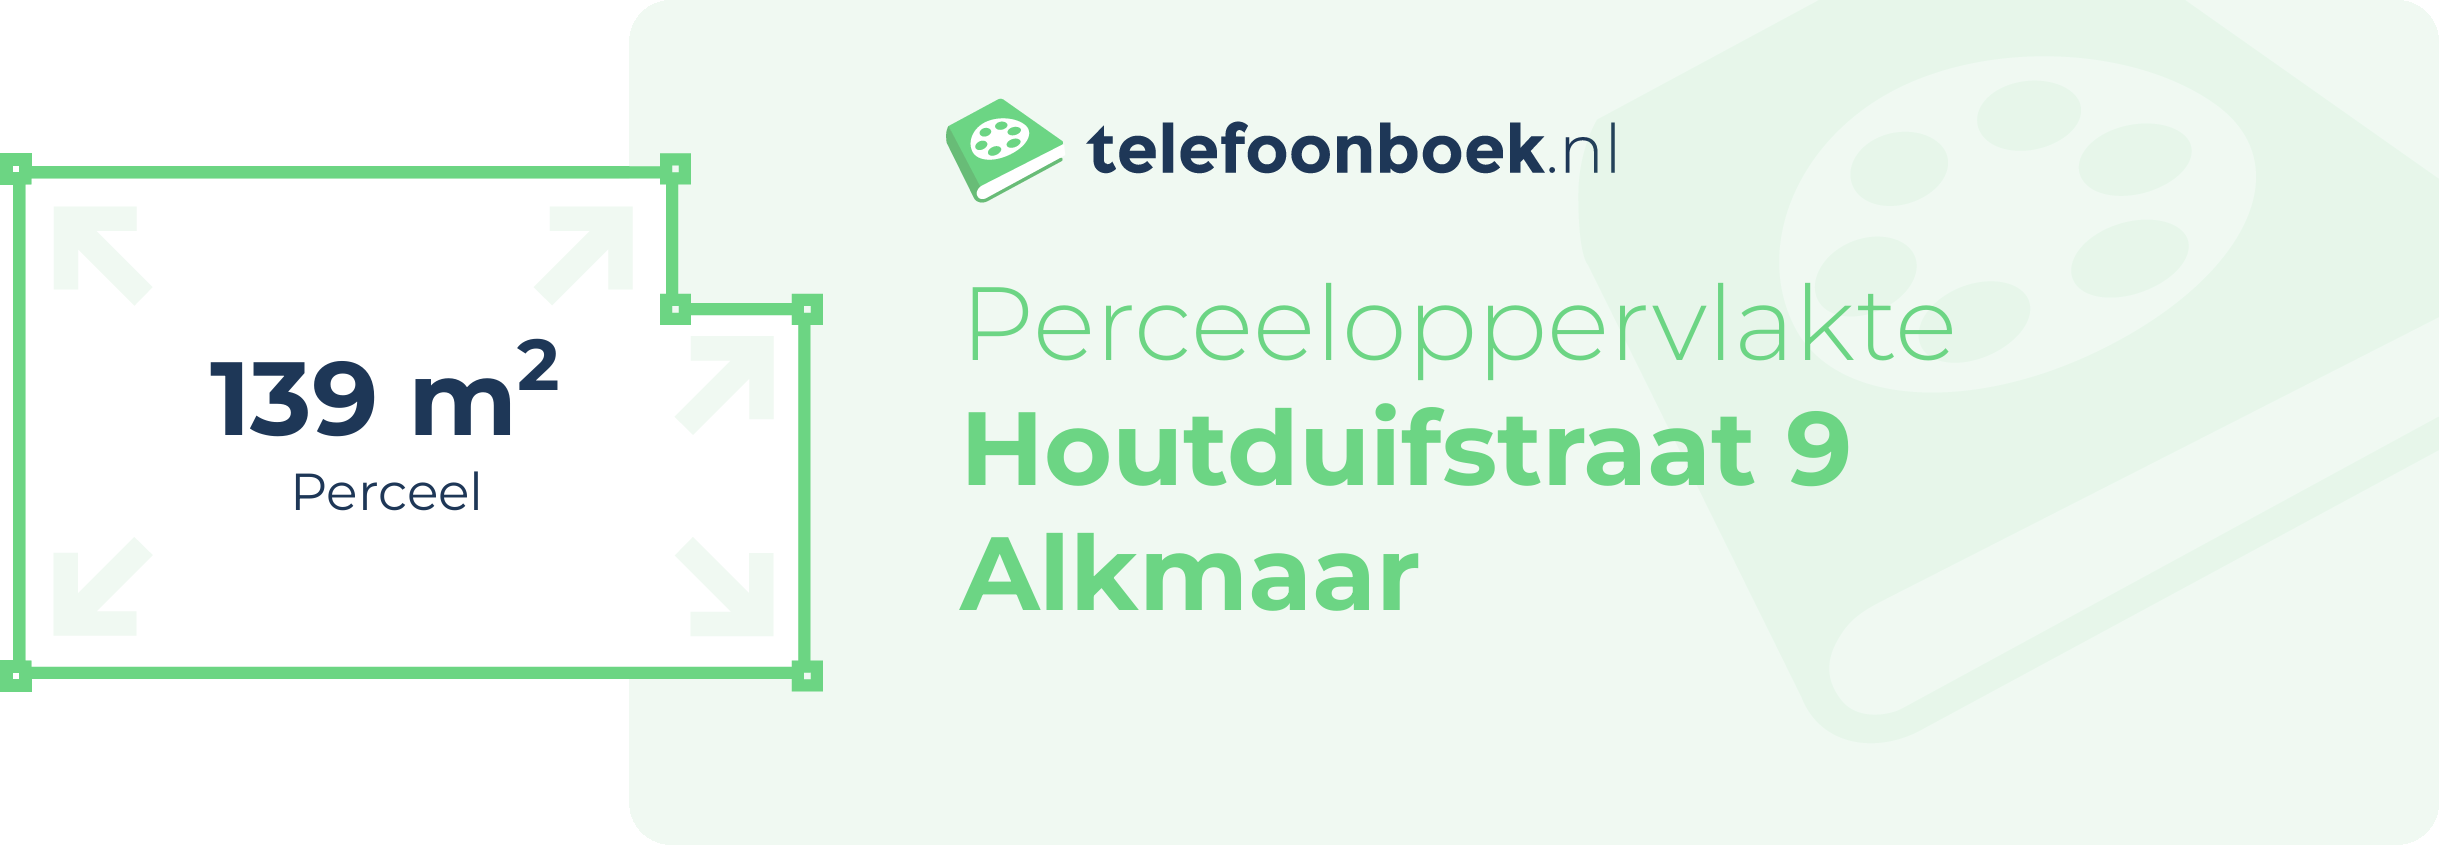 Perceeloppervlakte Houtduifstraat 9 Alkmaar